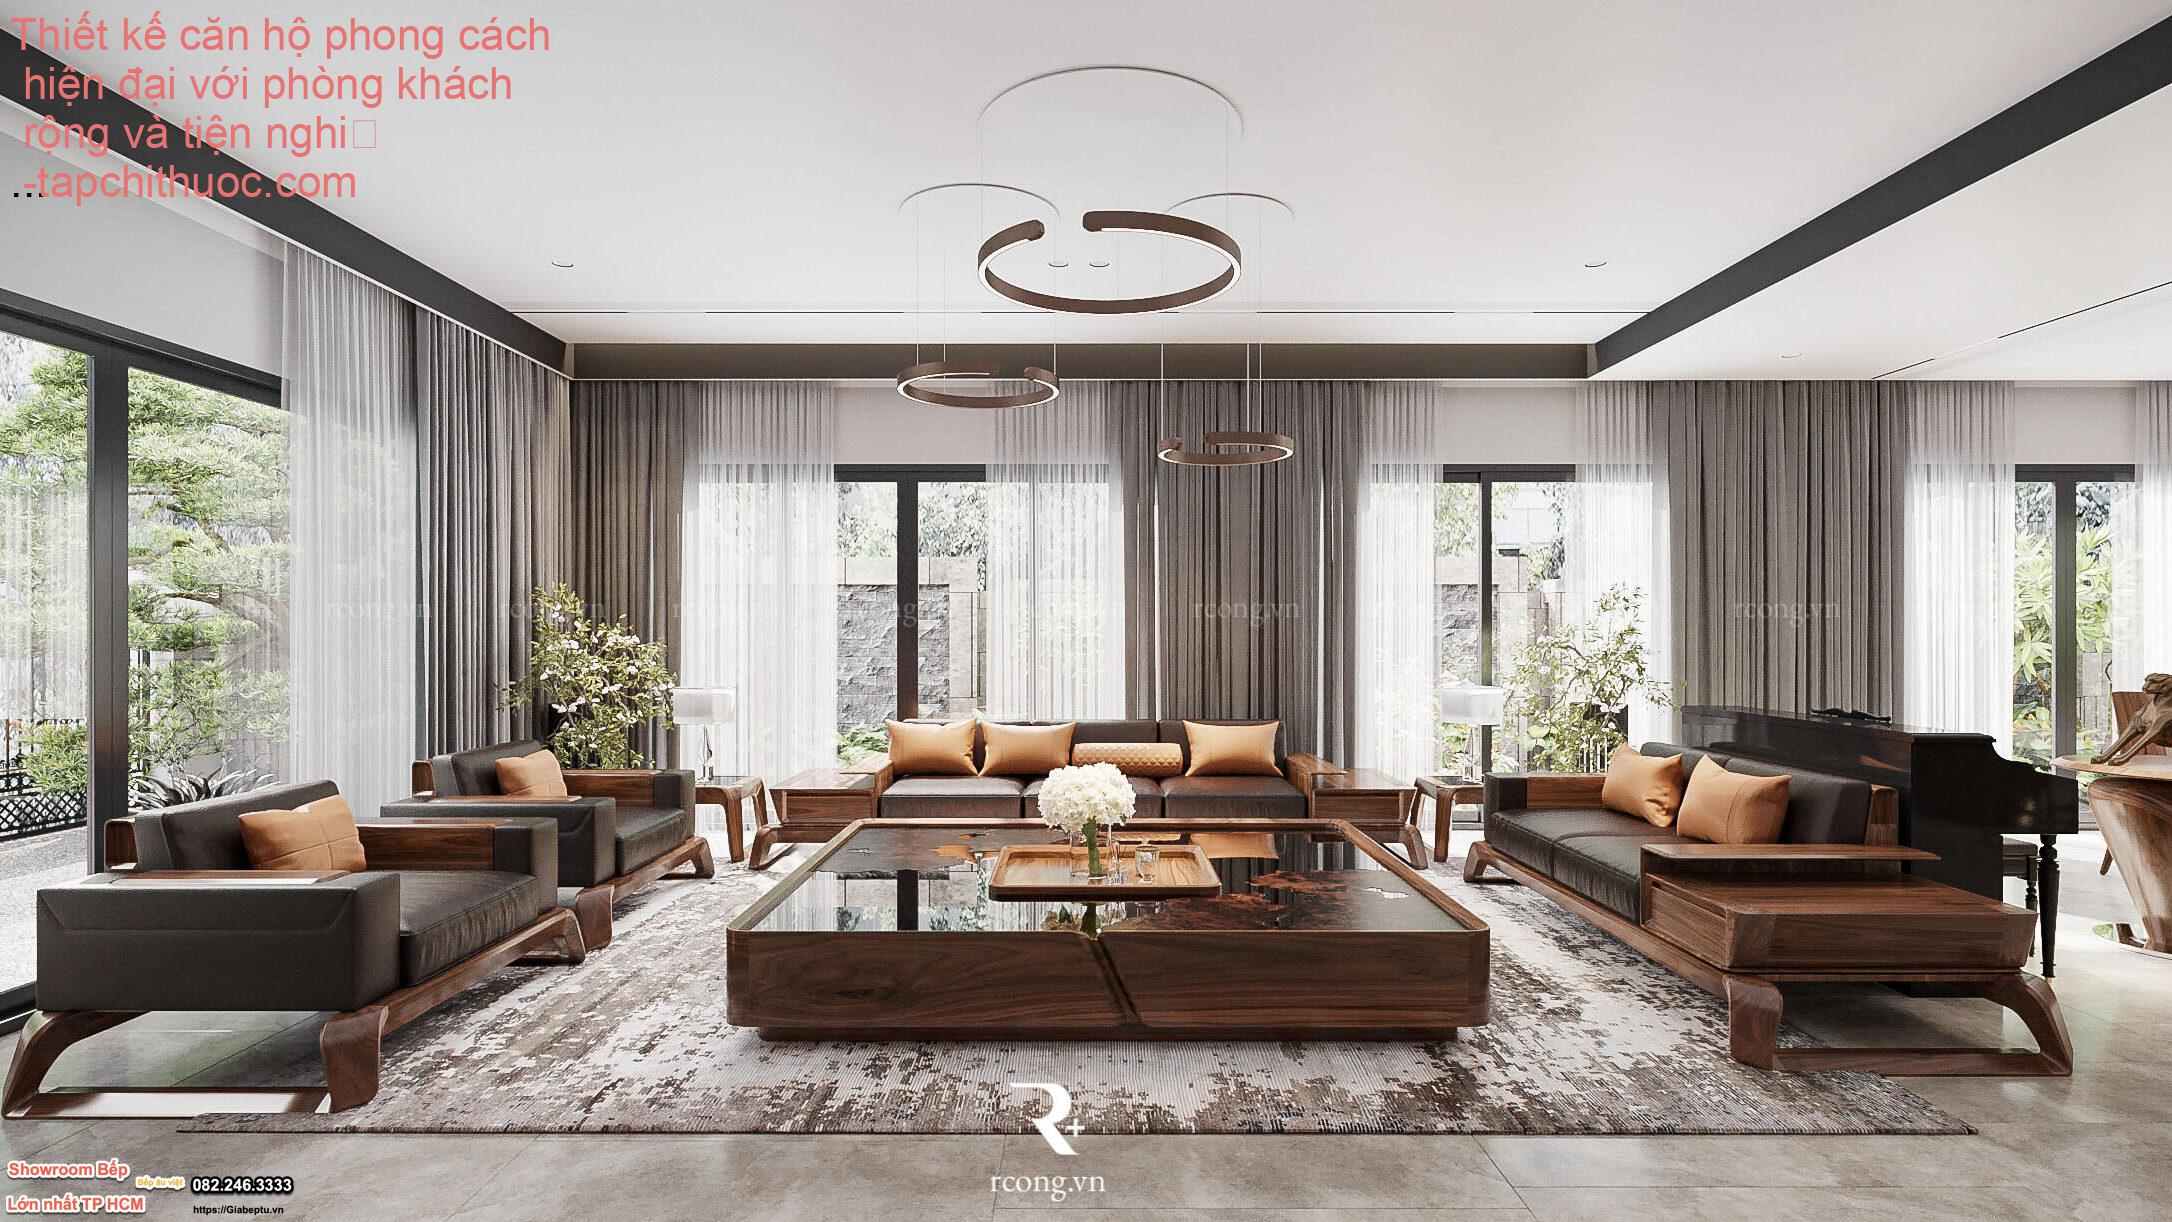 Thiết kế căn hộ phong cách hiện đại với phòng khách rộng và tiện nghi
